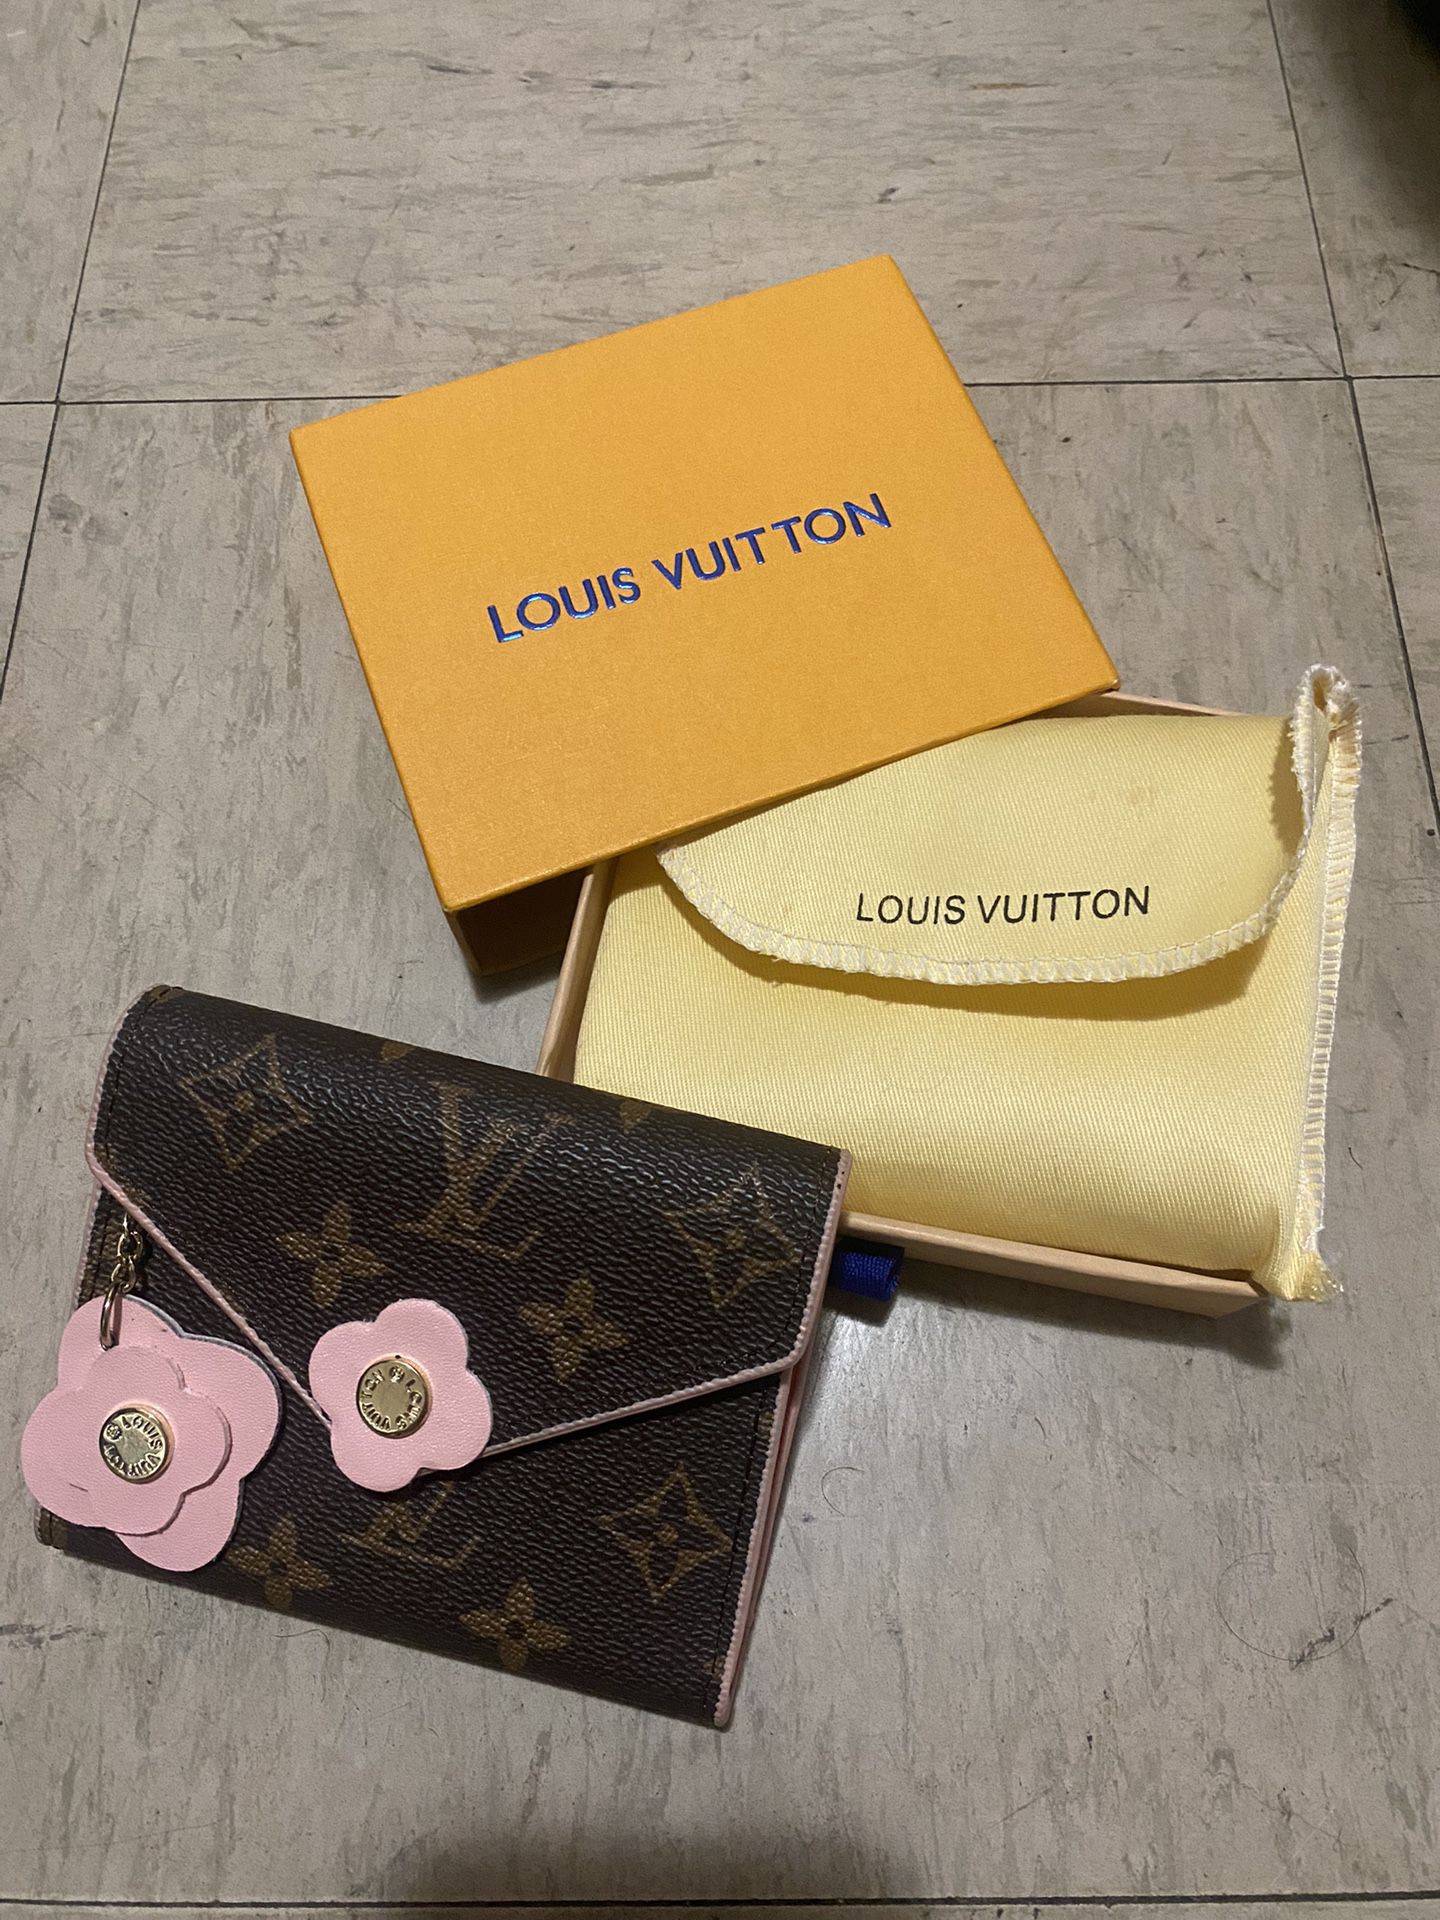 Louis Vuitton Wallets for sale in Honolulu, Hawaii